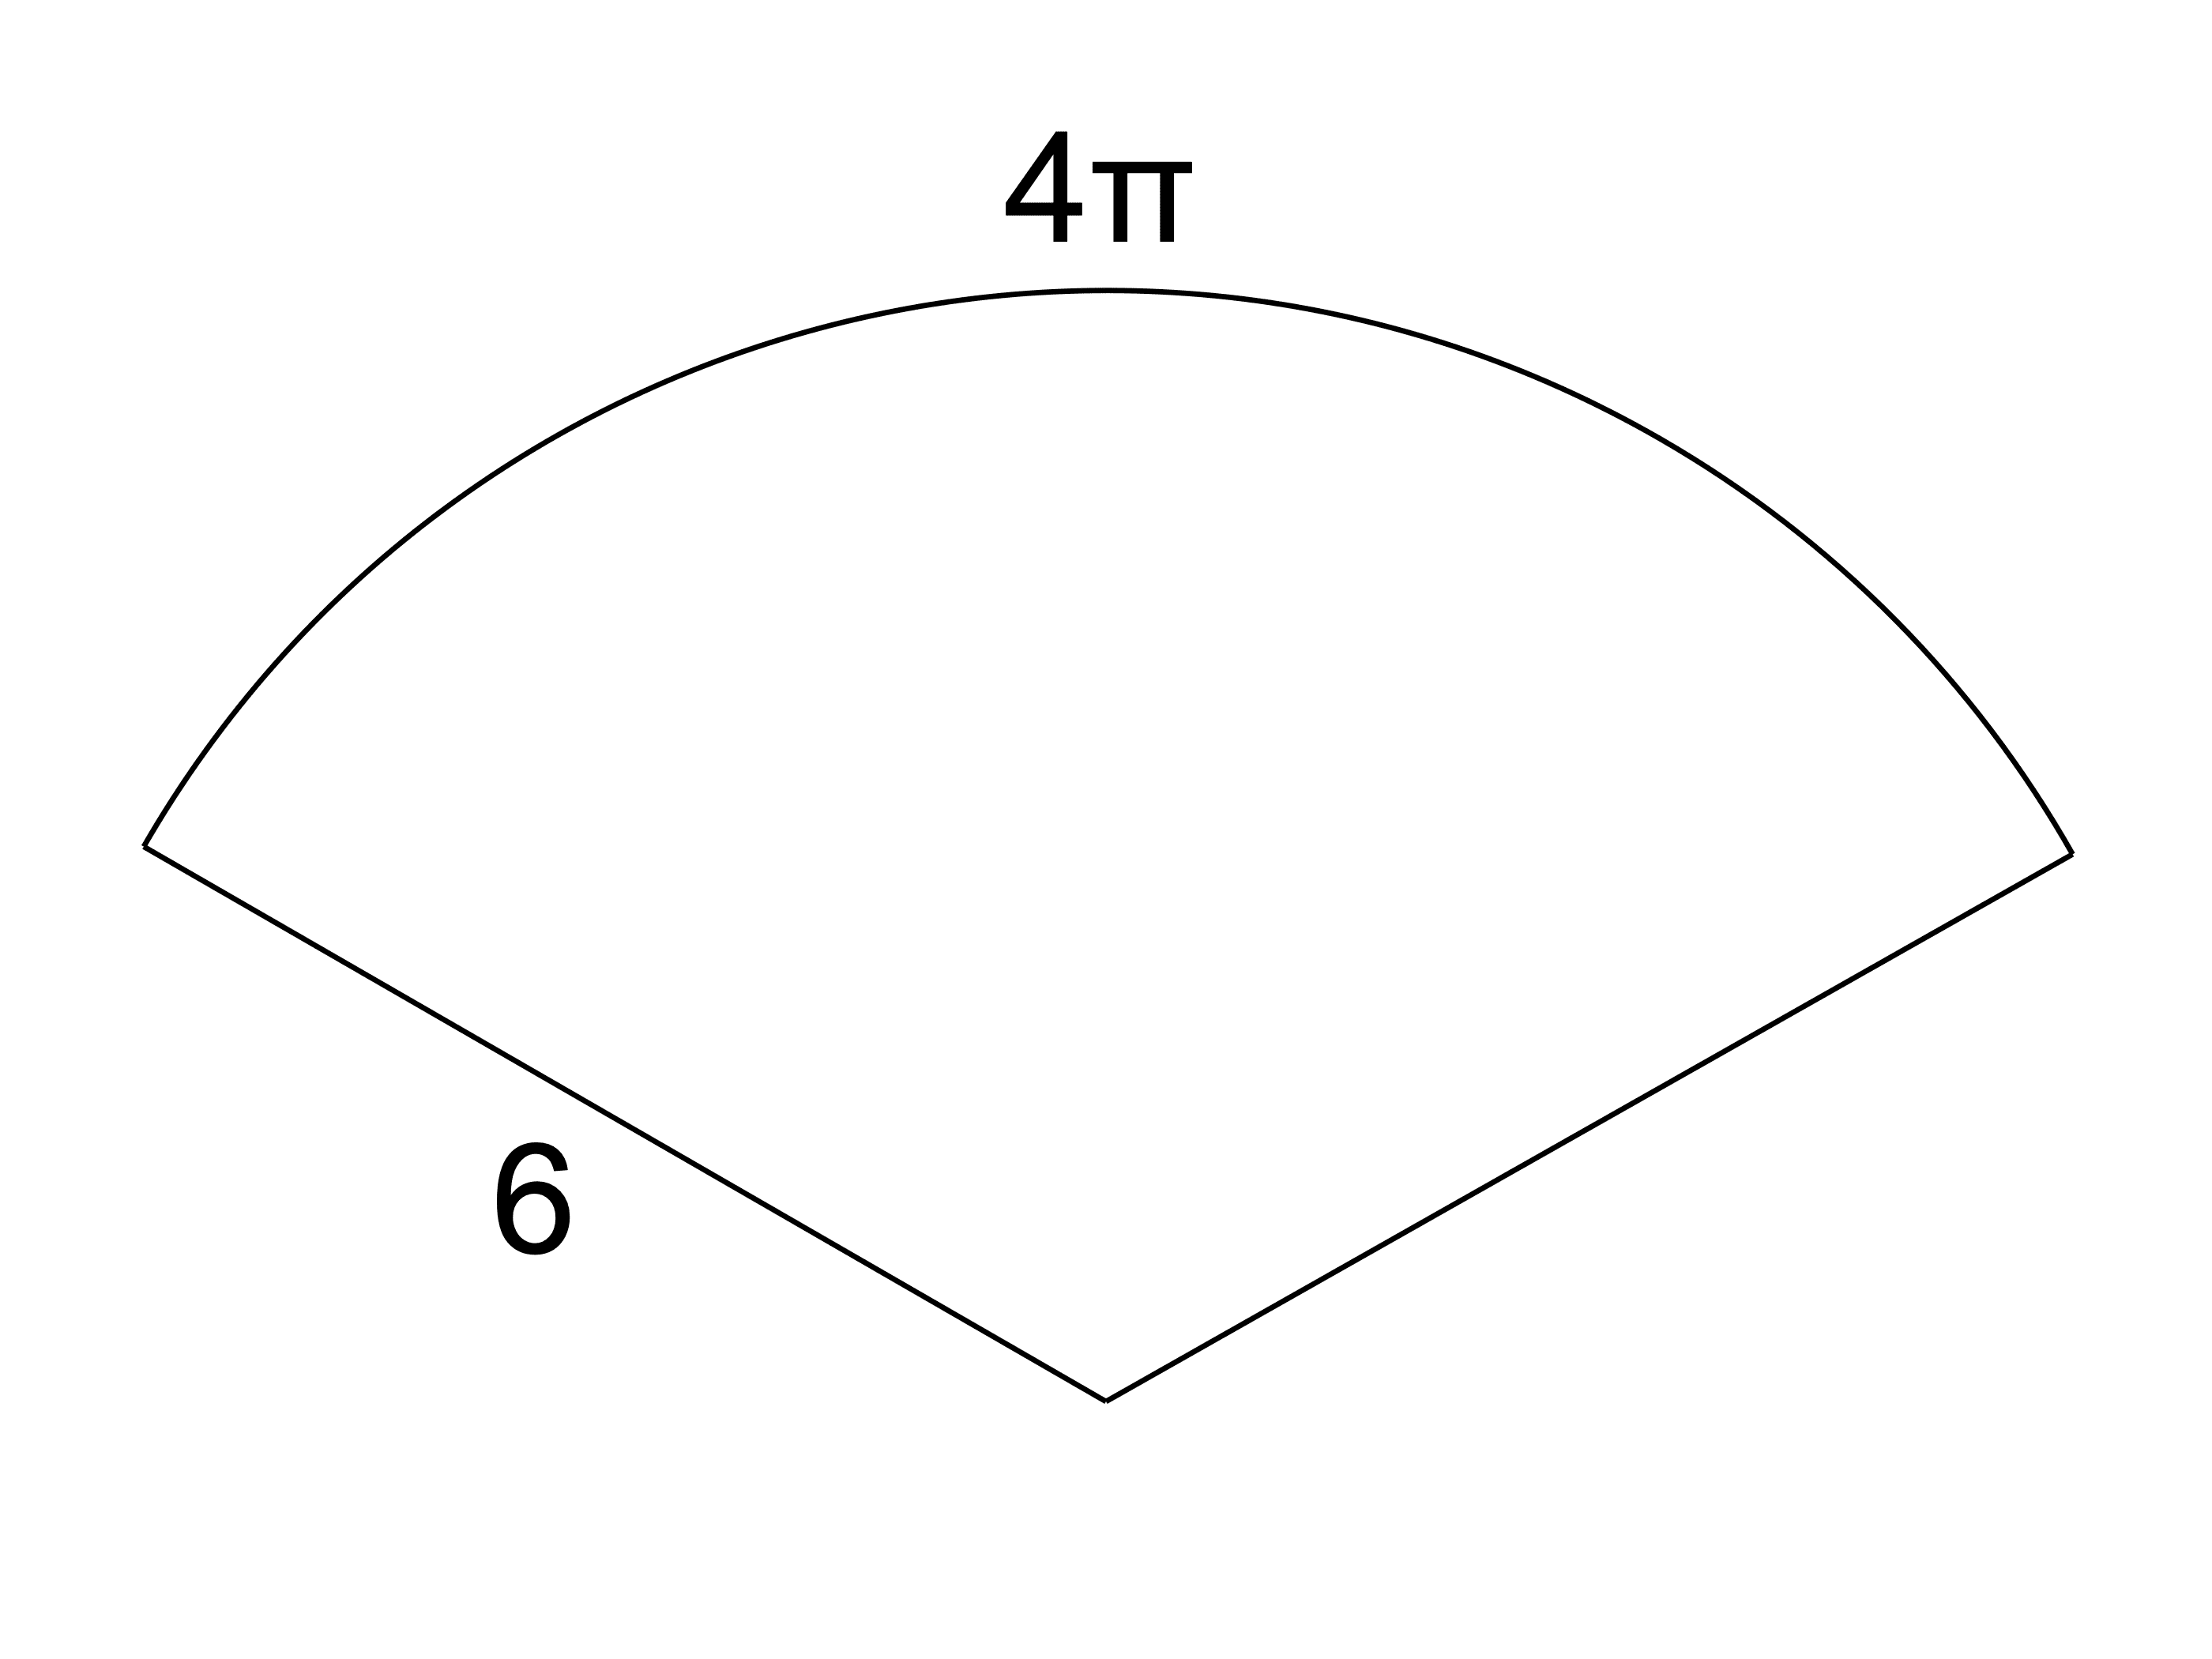 扇形とは 面積 中心角 半径 弧の長さの公式と求め方 受験辞典